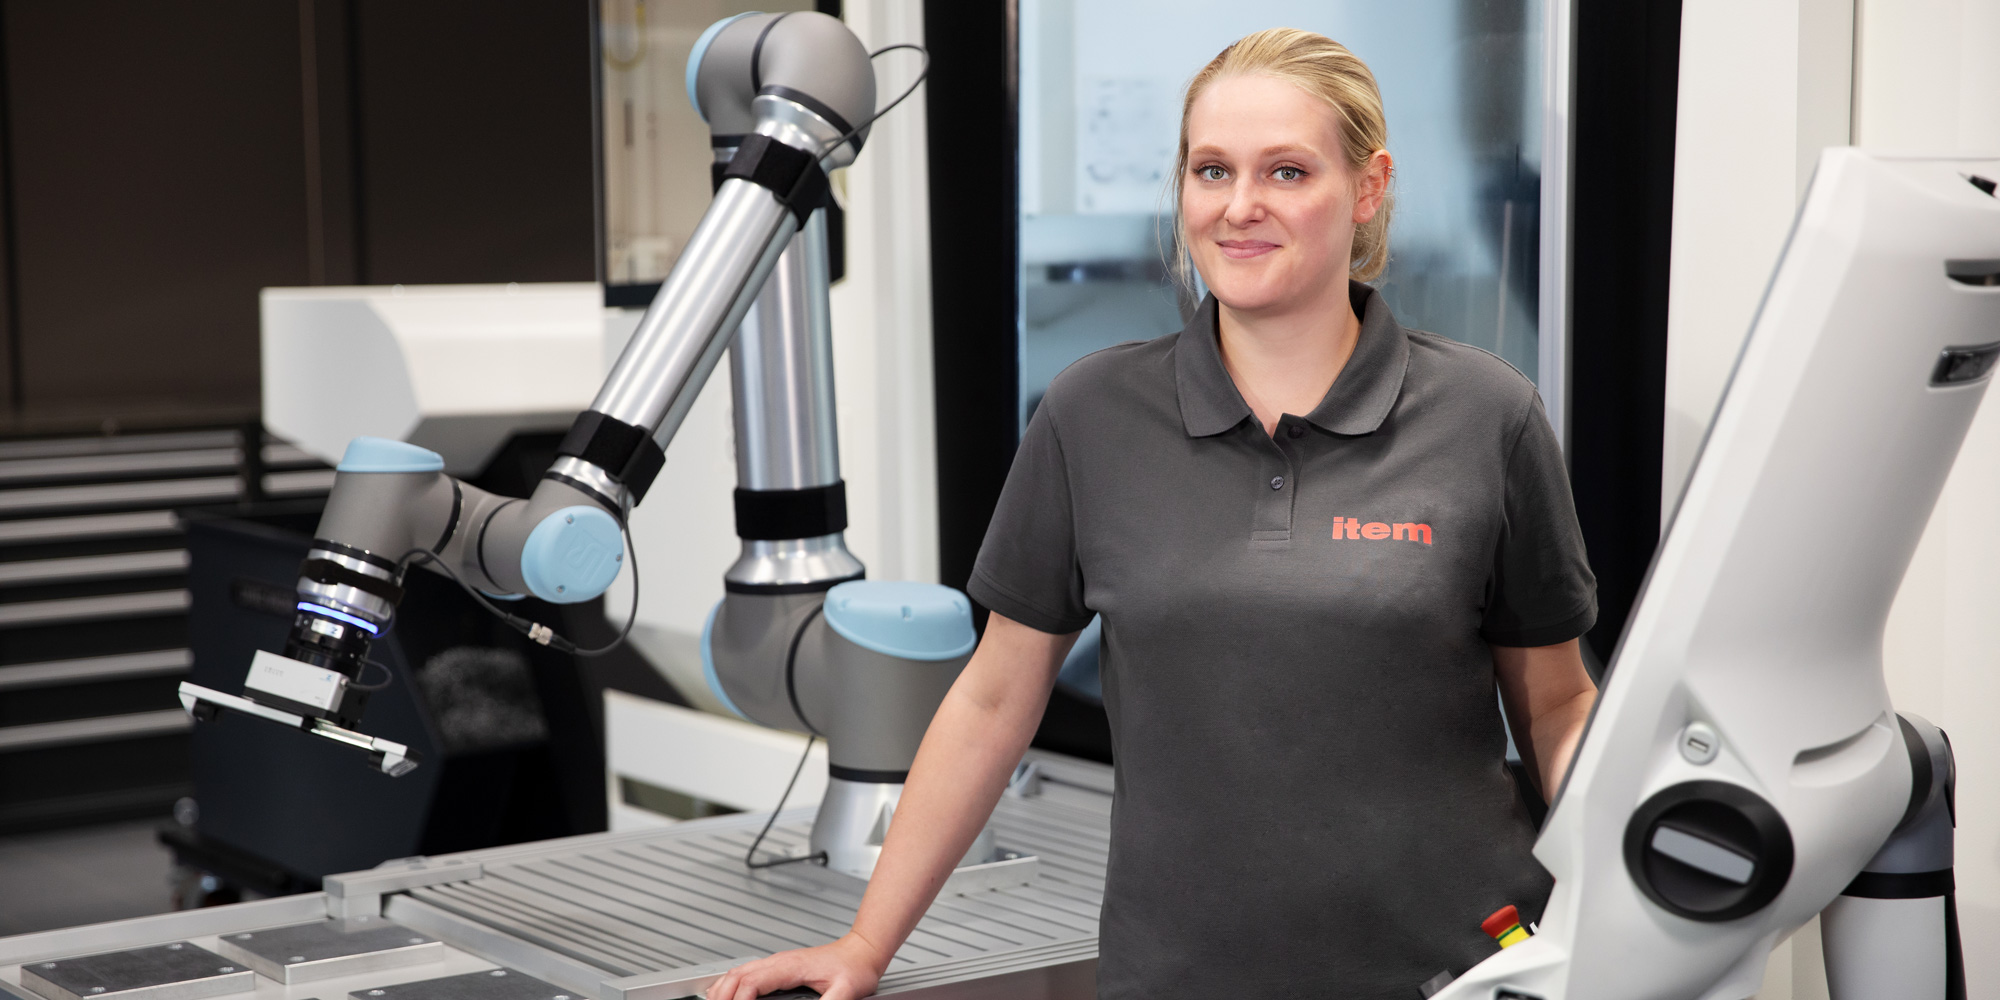 La robotica nell’industria: integrata in modo flessibile e senza saldature